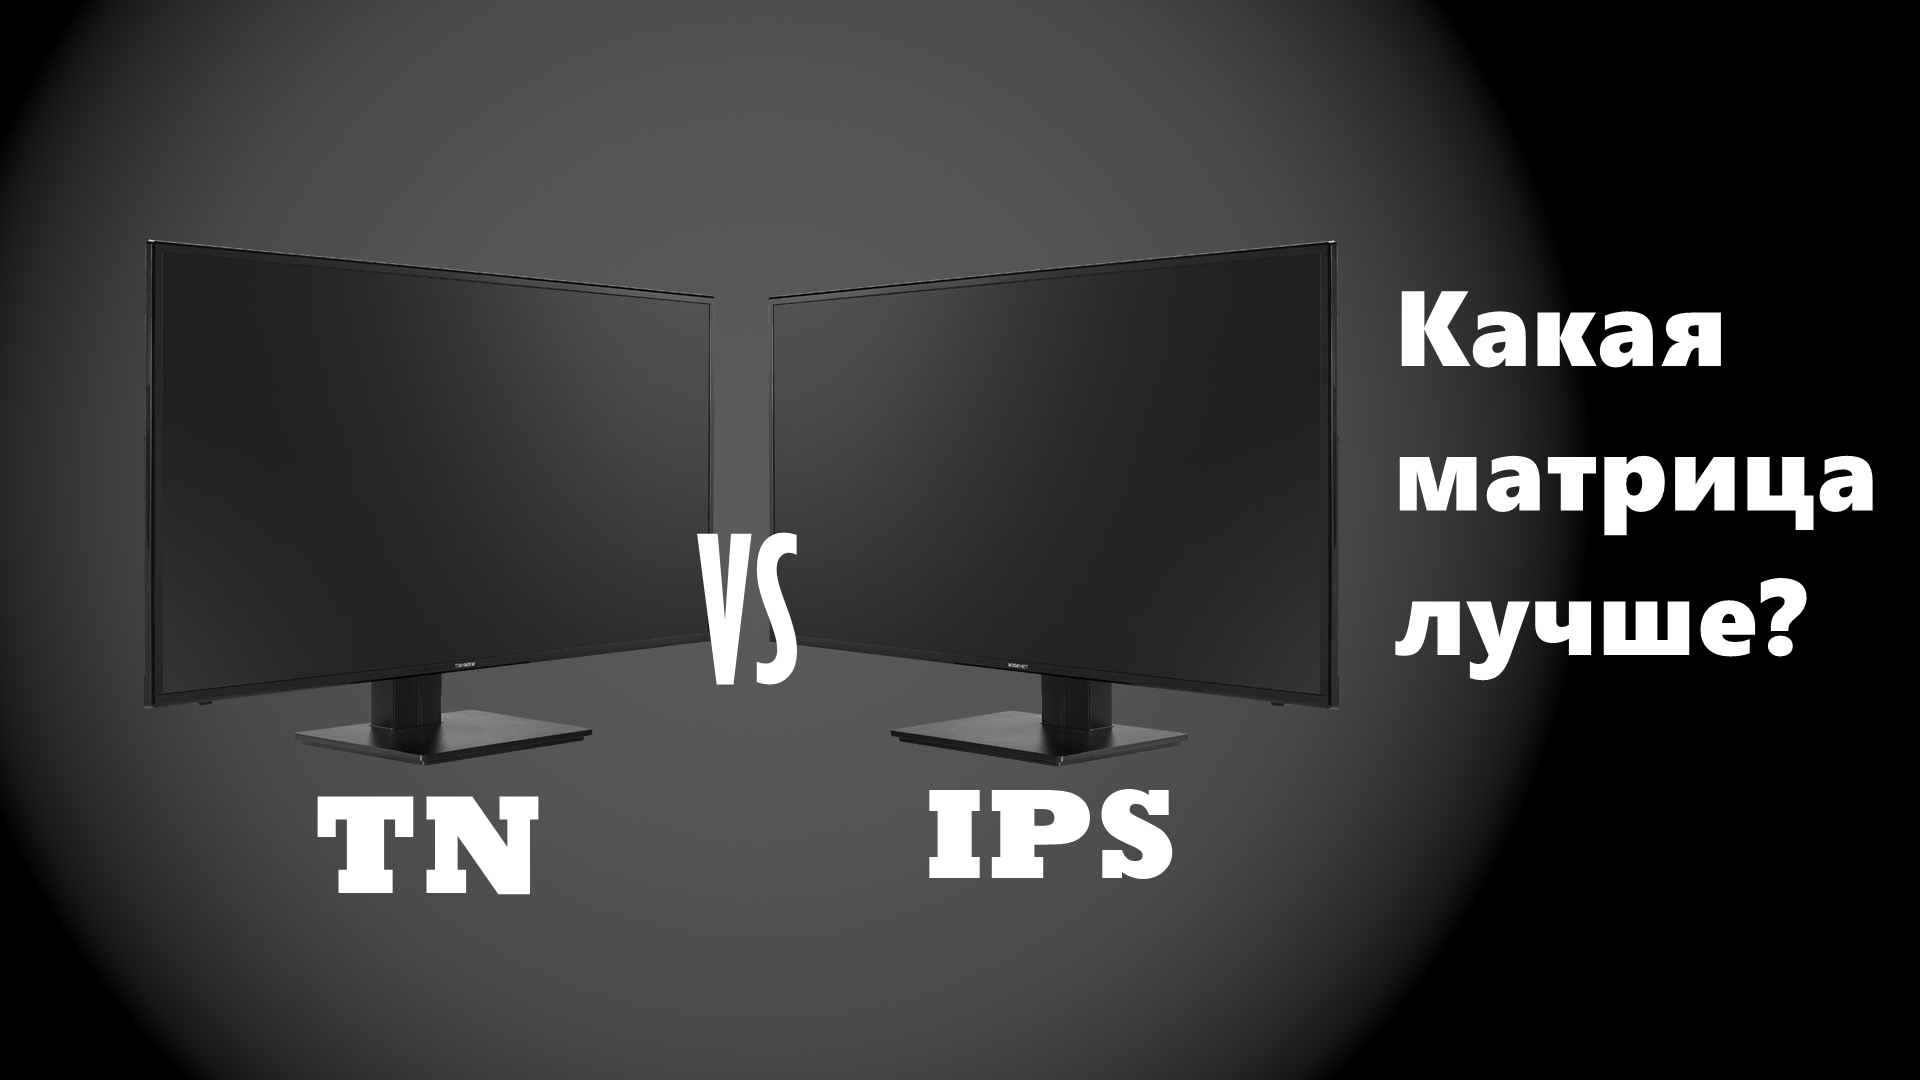 Матрица ips или tn. TN матрица. 19 Дюймовый монитор на тн матрице. IPS или TN. Типы матриц телевизоров какая лучше.